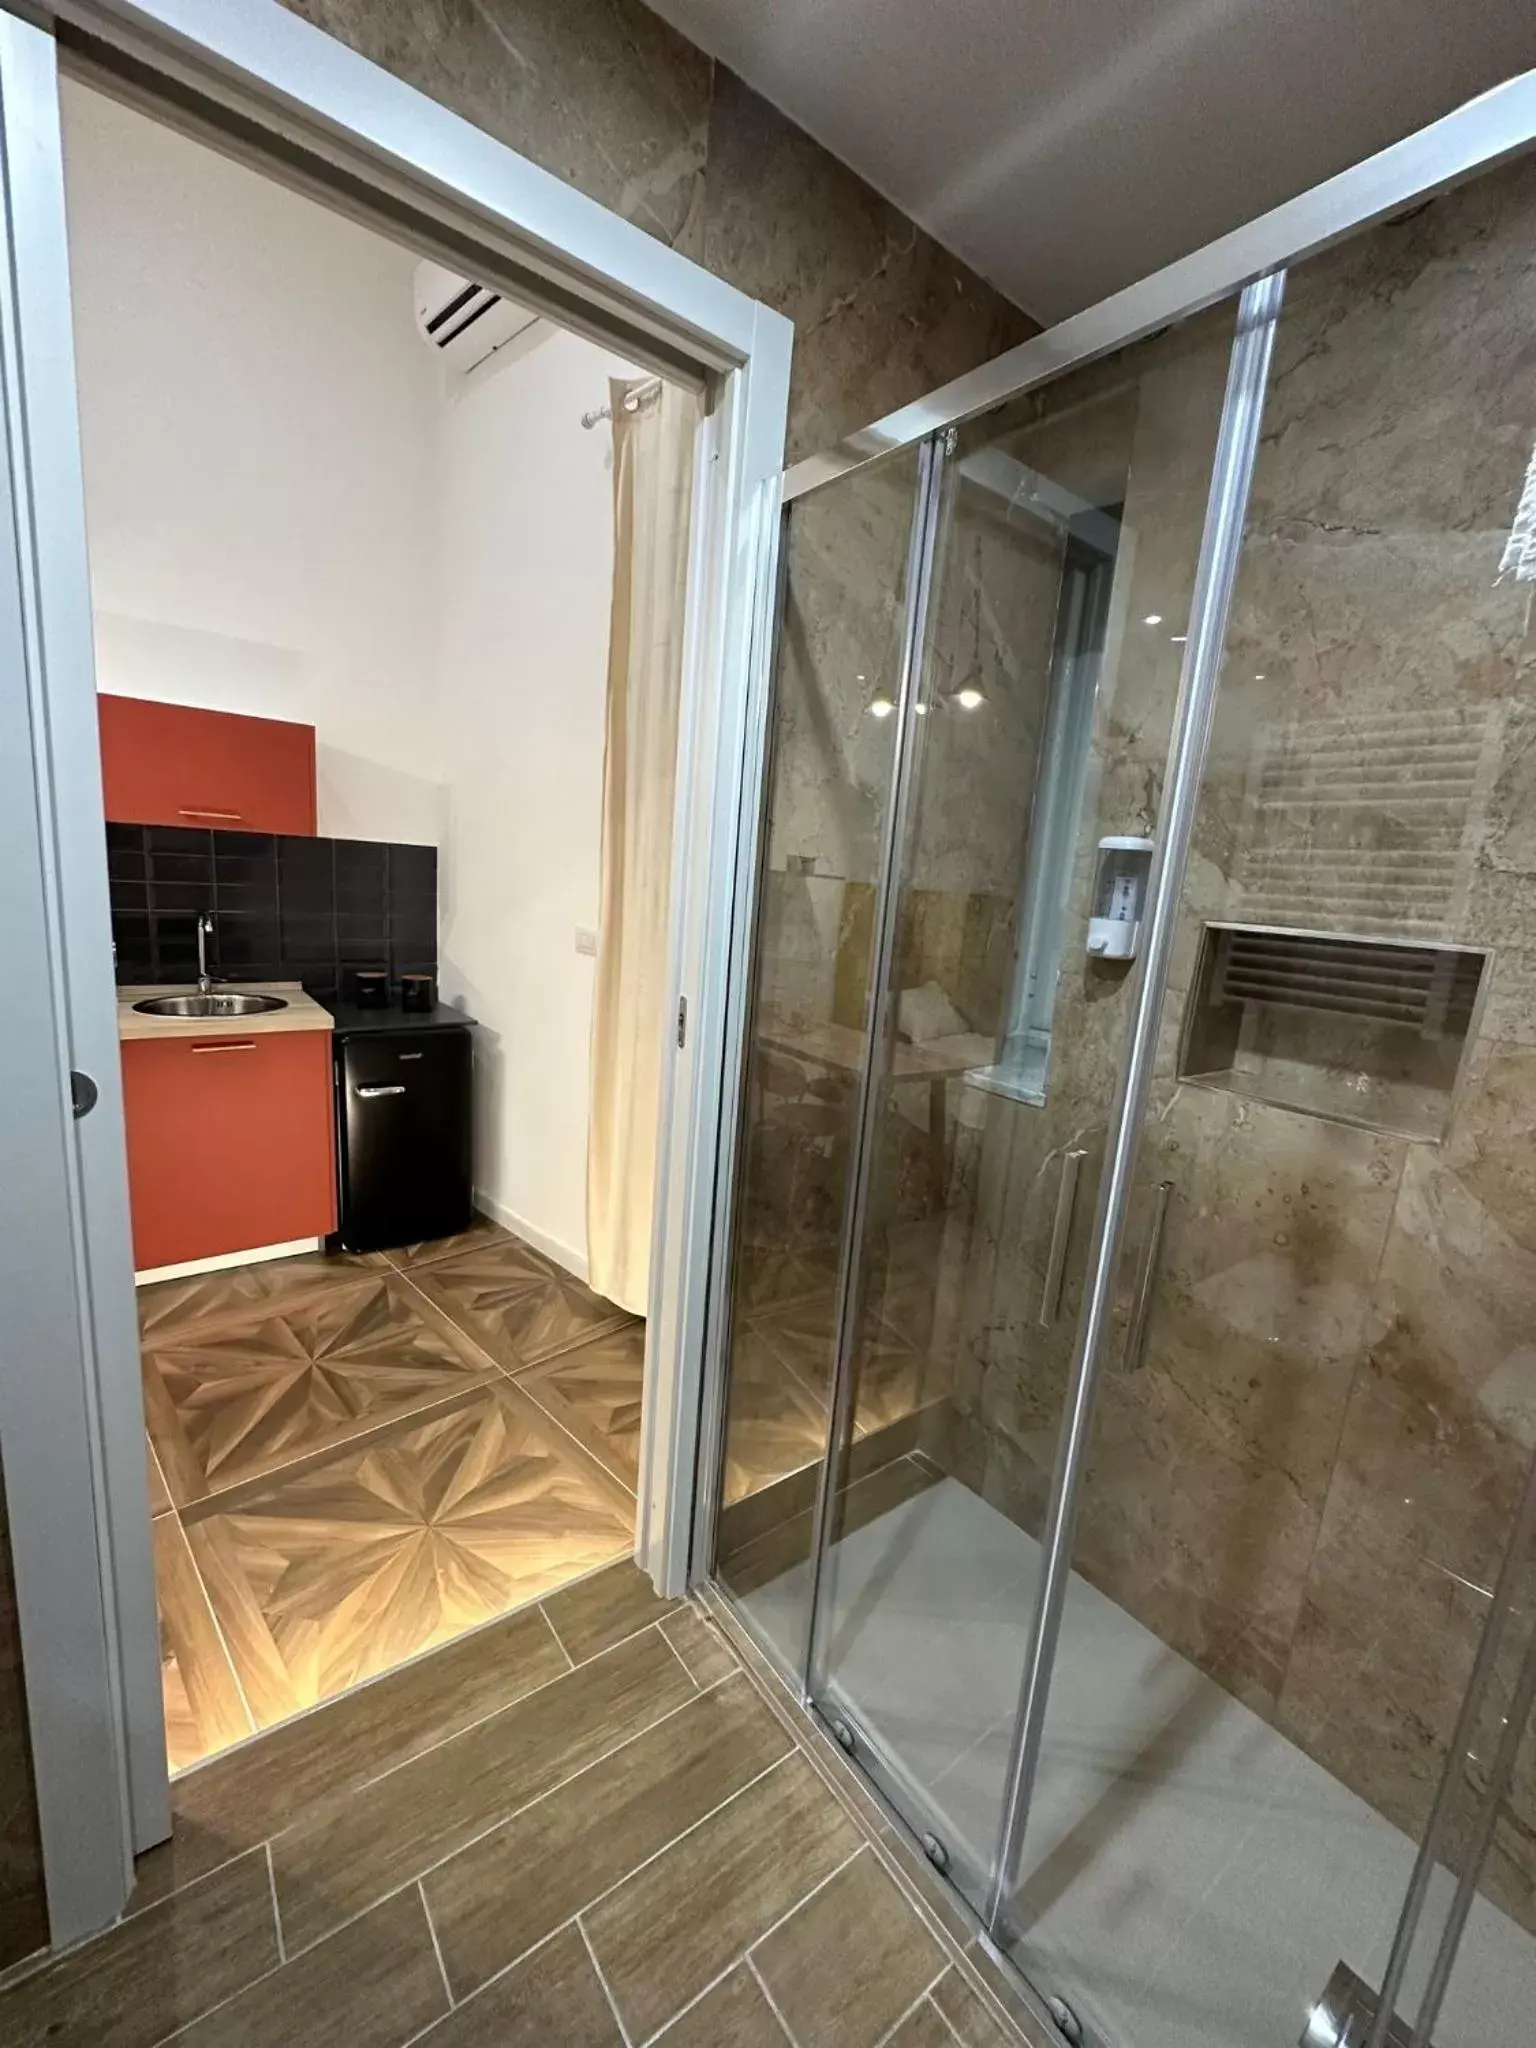 Bathroom in San Ferdinando suite room